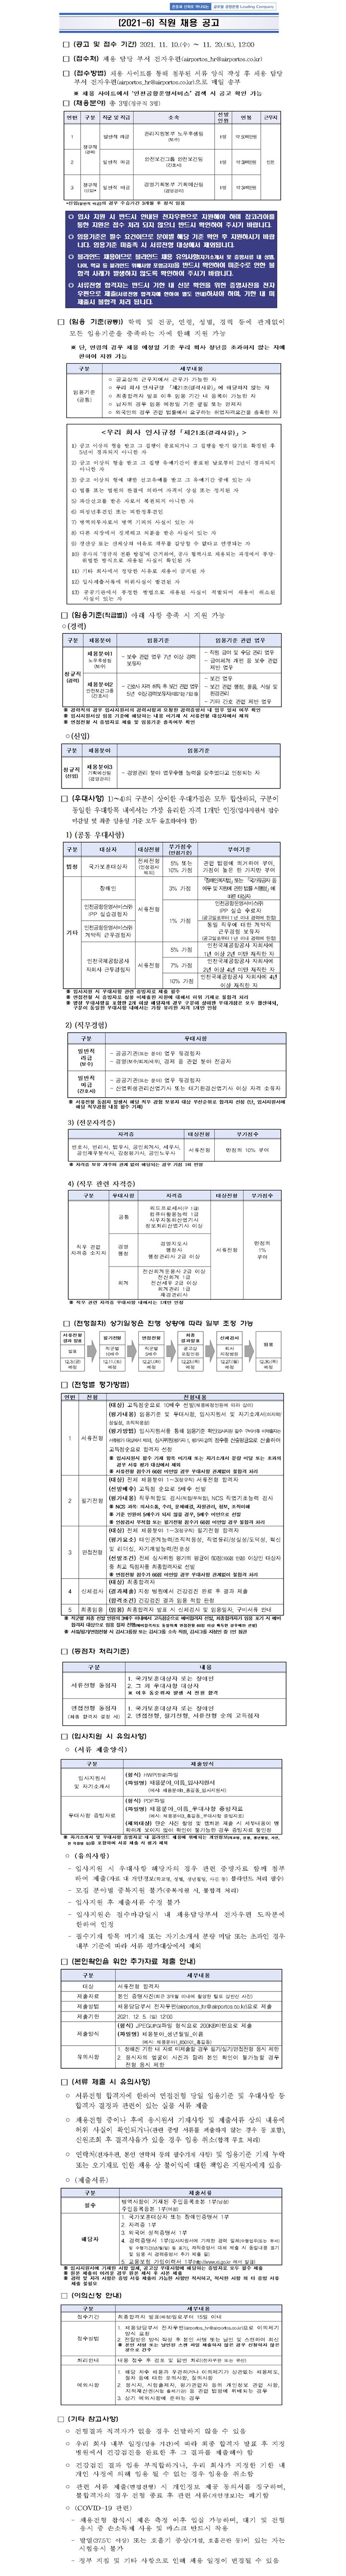 인천공항운영서비스_(2021-6)직원채용공고.JPG